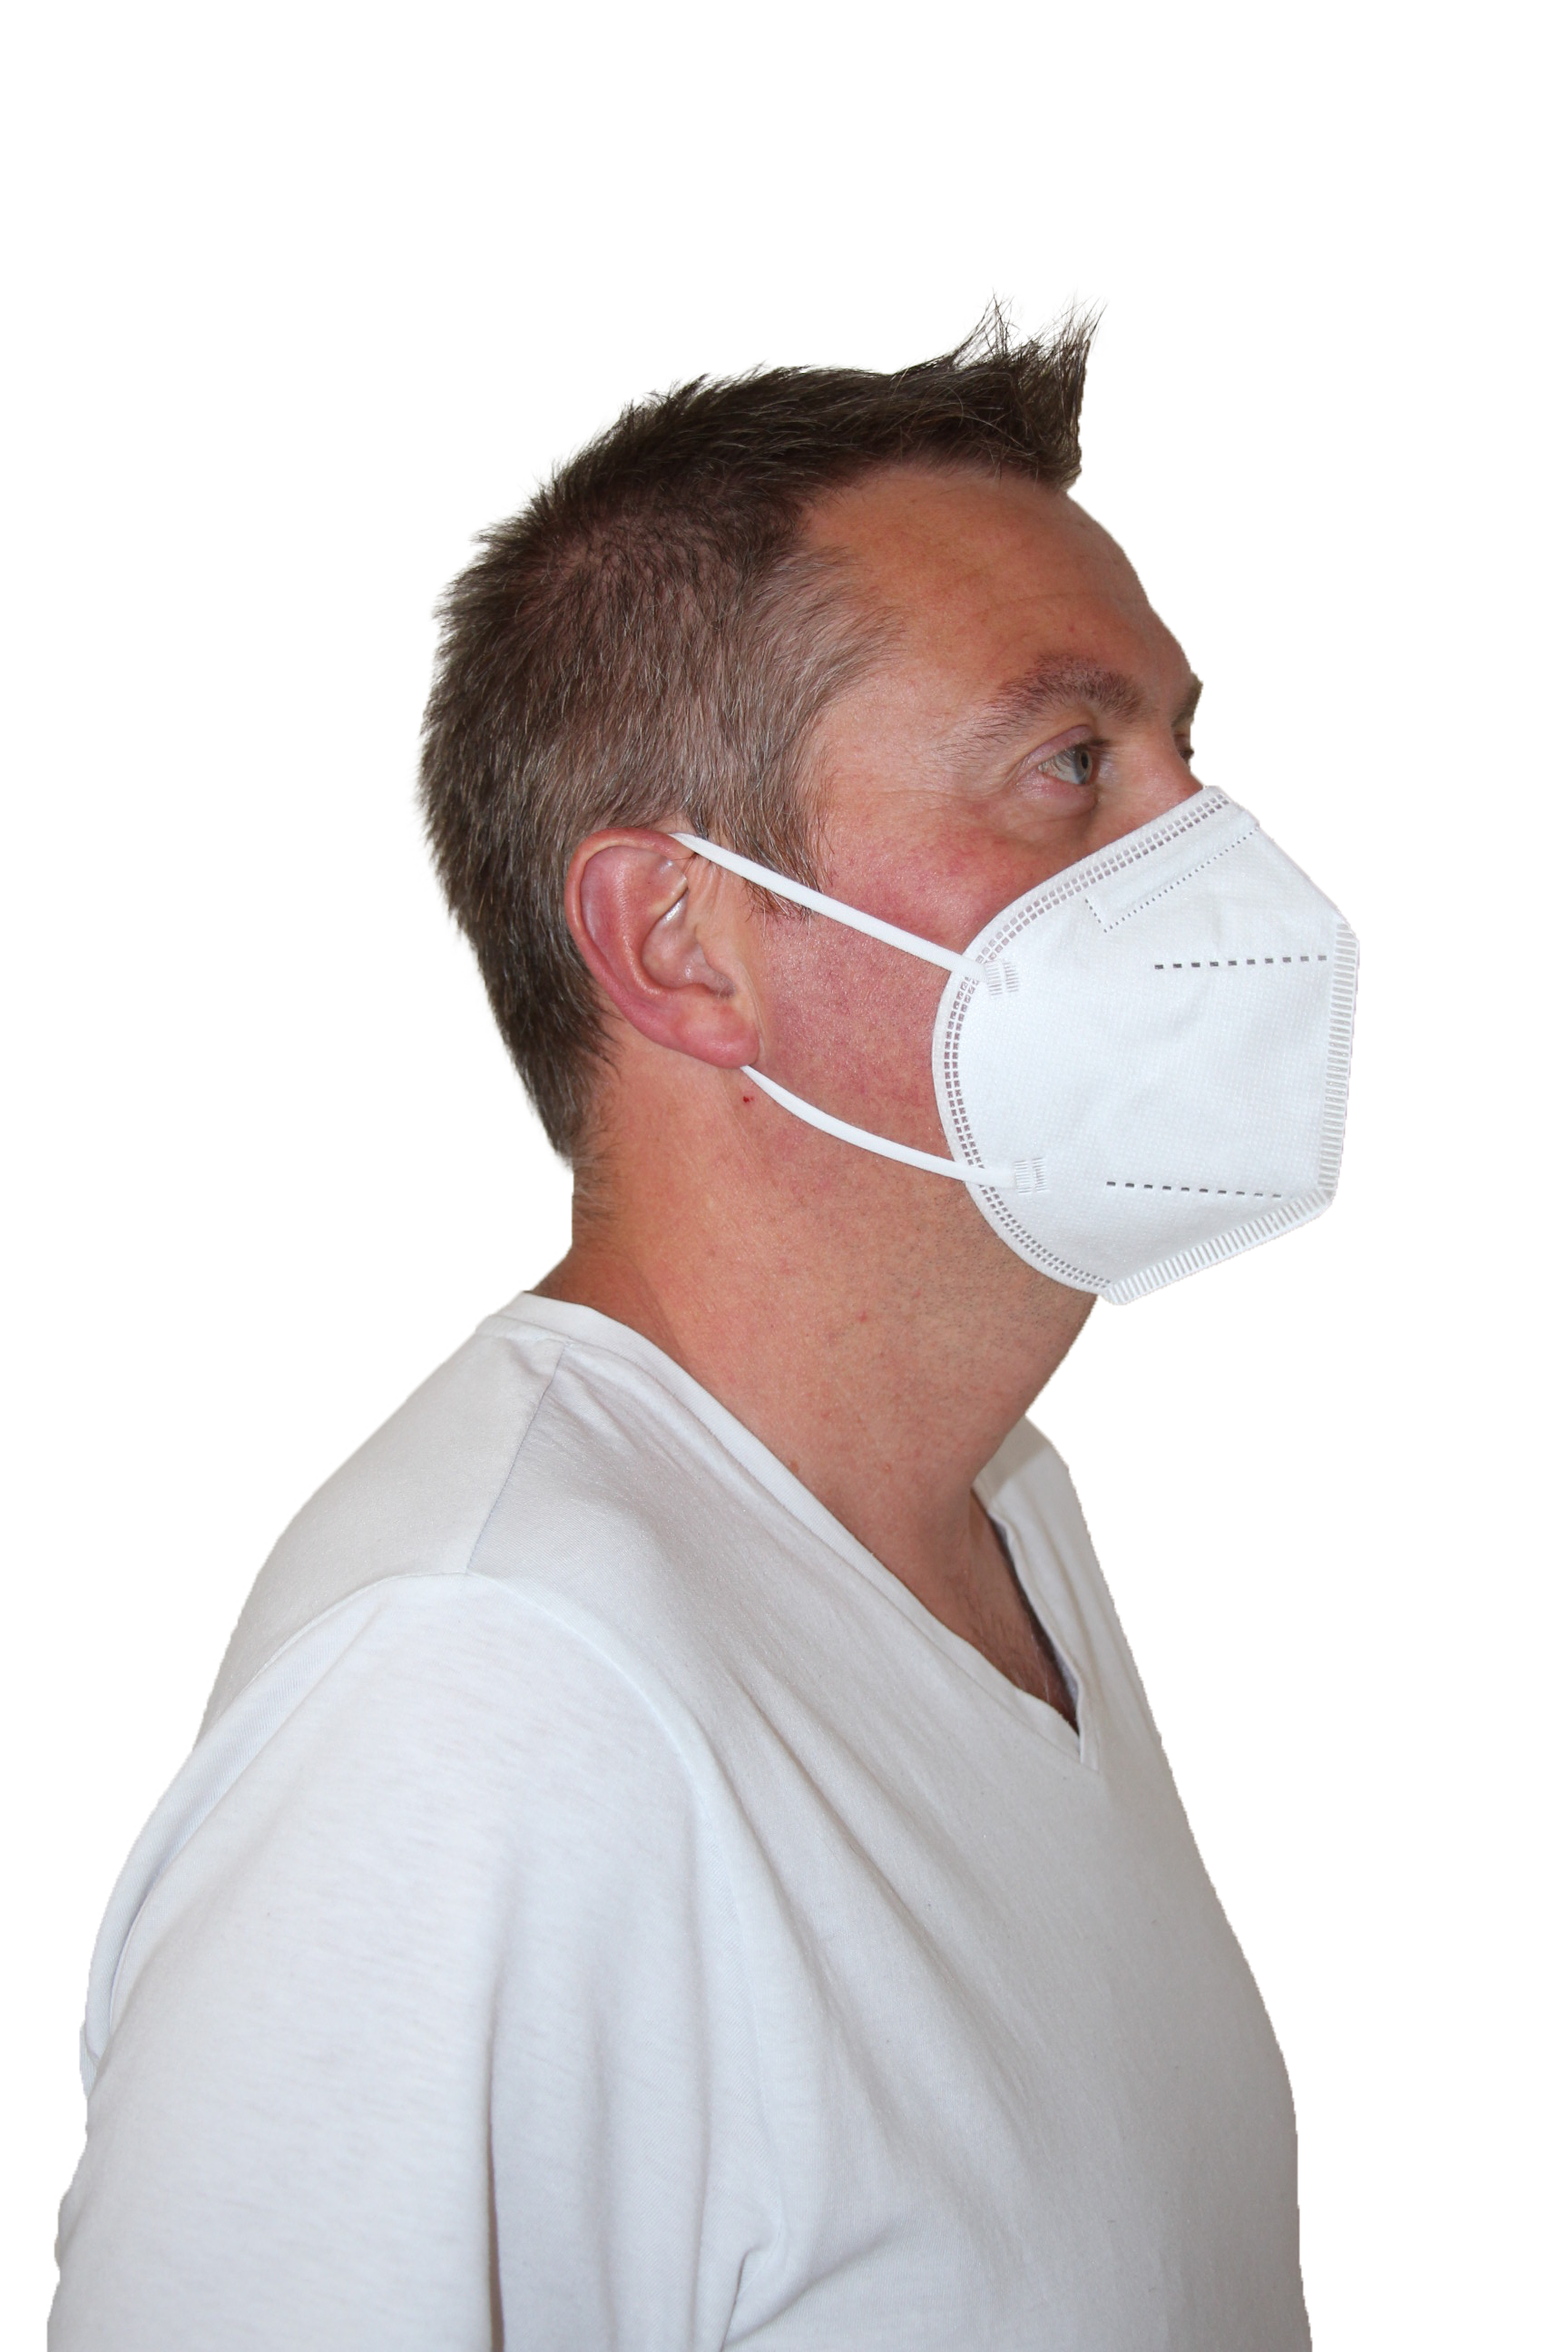 Masque respiratoire jetable avec lunette FFP2 Filterspec Pro JSP